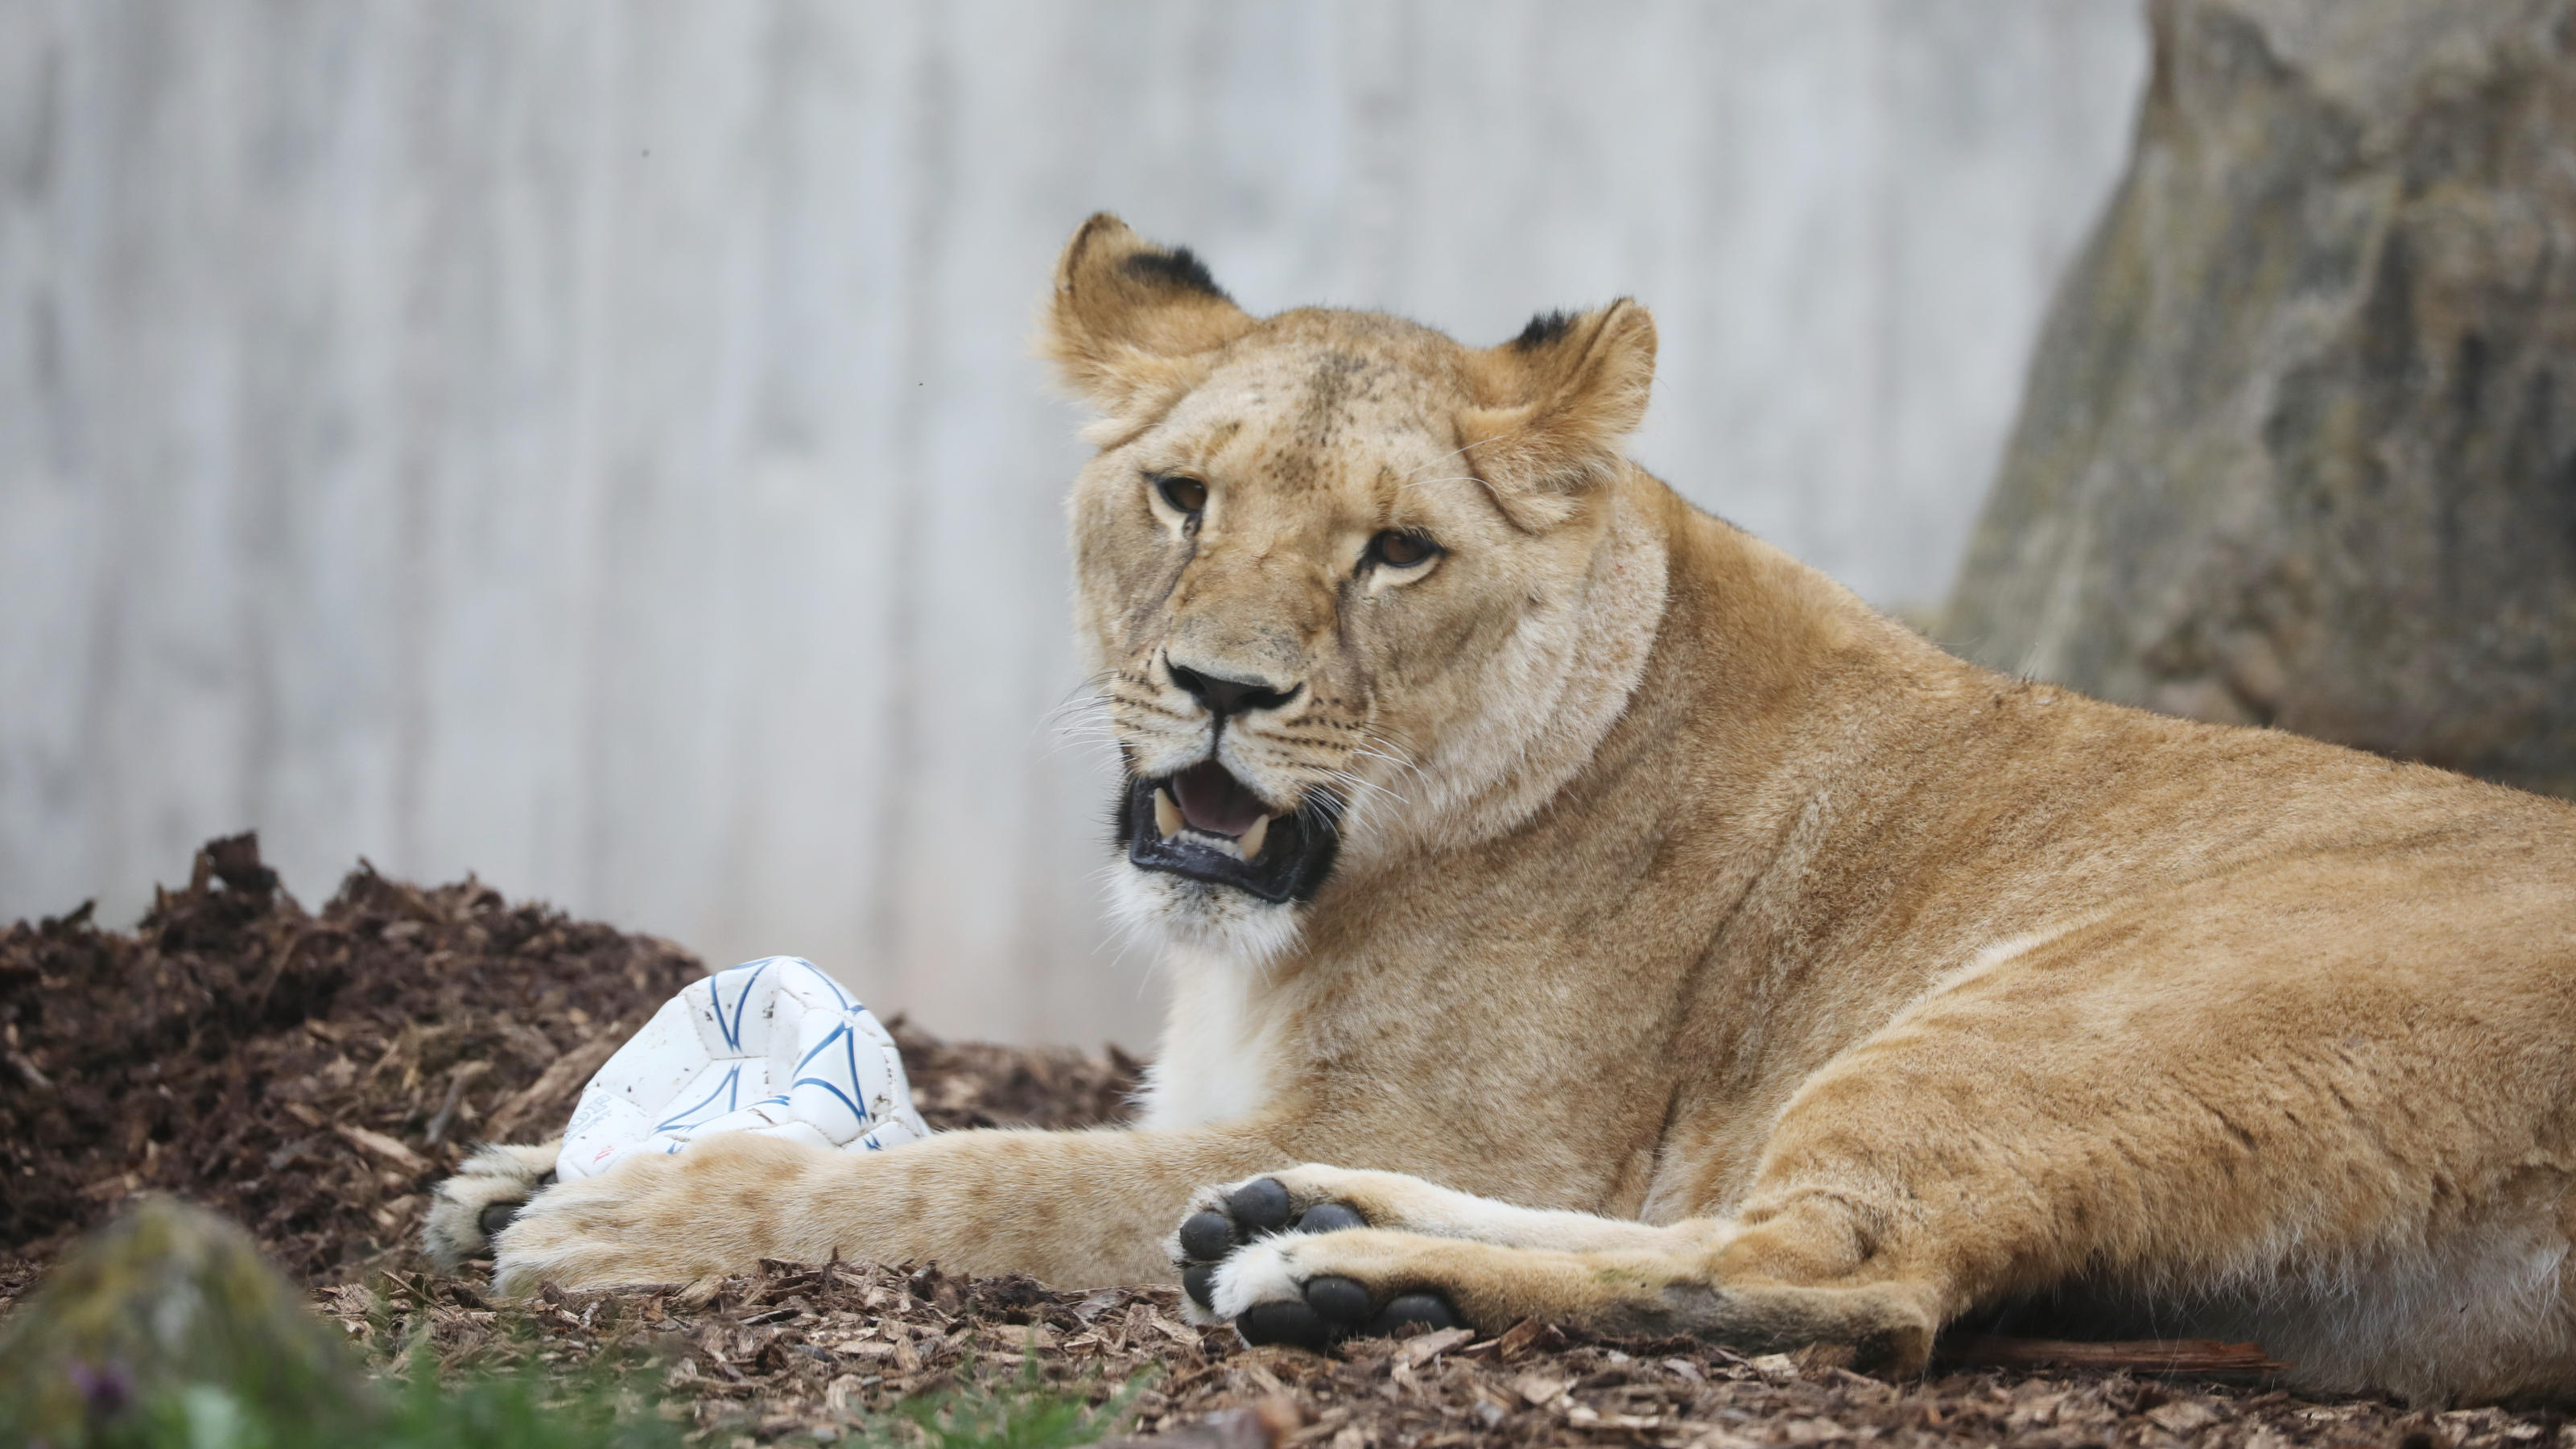 Löwin Latika liegt mit einem Ball im Erfurter Zoo.